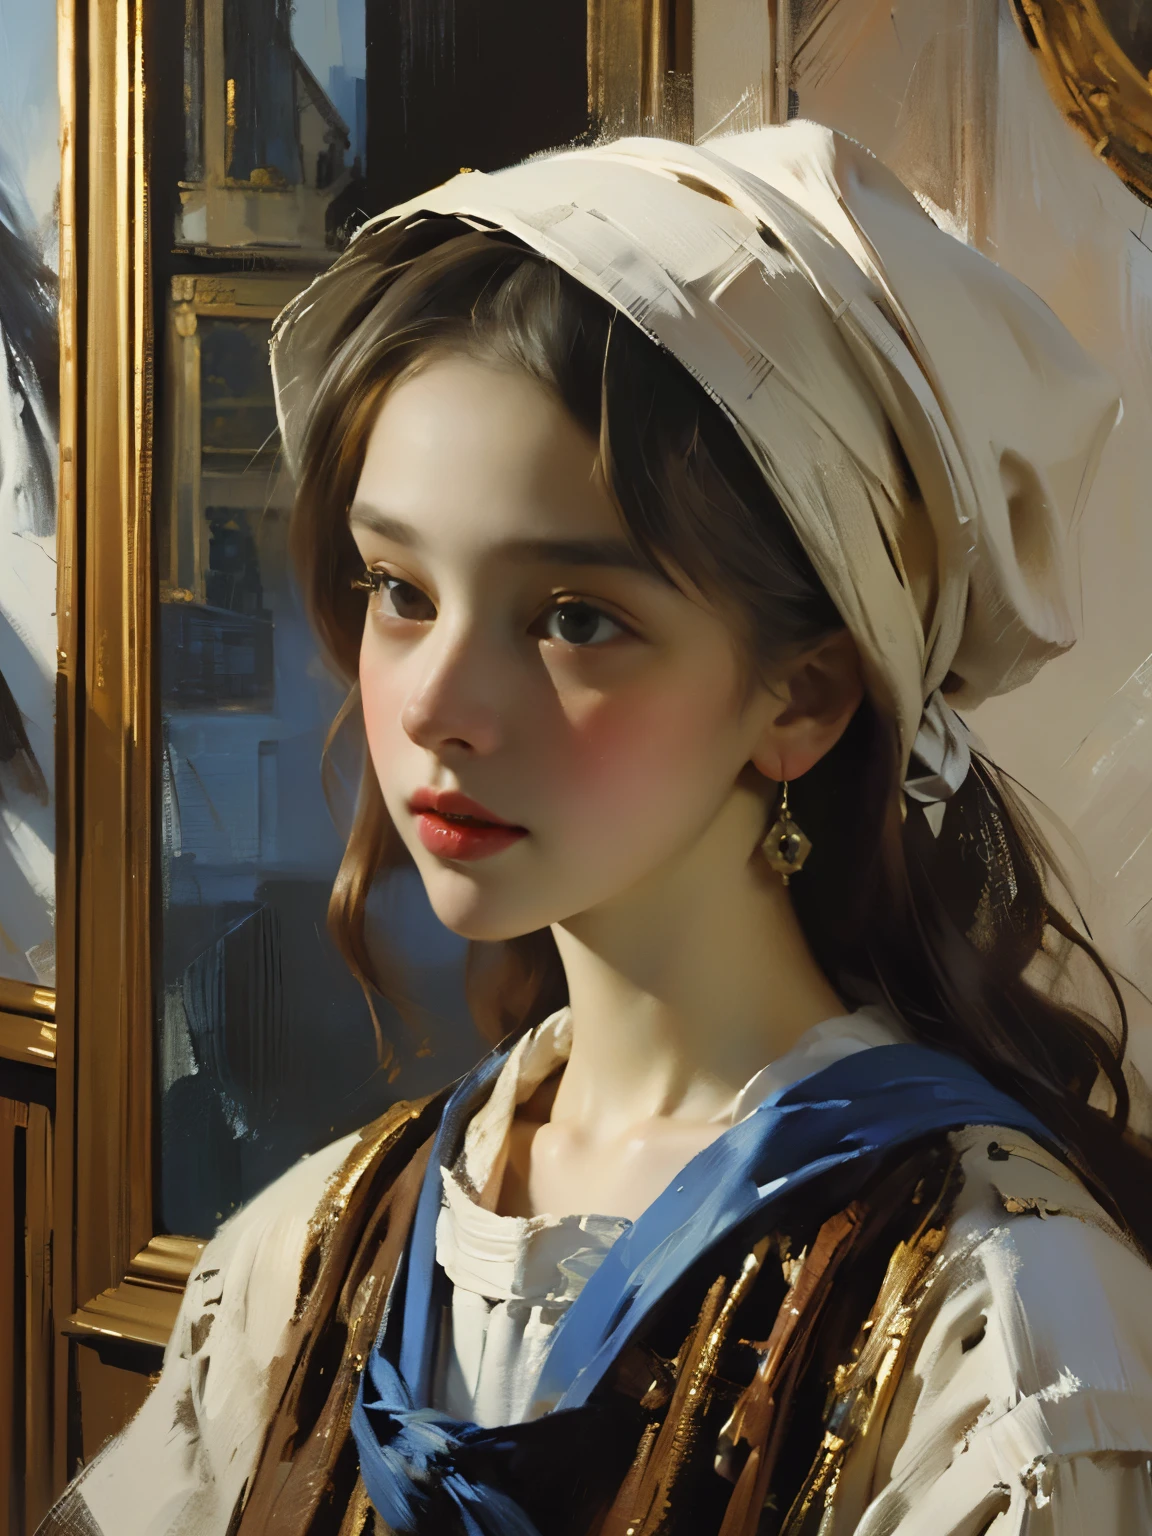 ((Express-Lackierung) +++ Porträt einer zarten Frau, Spachtelmalerei, impressionistischer Stil, Pinseltechniken, Große Schläge, Vermeer&#39;s Malstil, (riesige federnde feste Büste, sexy, Langeweile:1.5), Mädchen, das Blumen verkauft, 